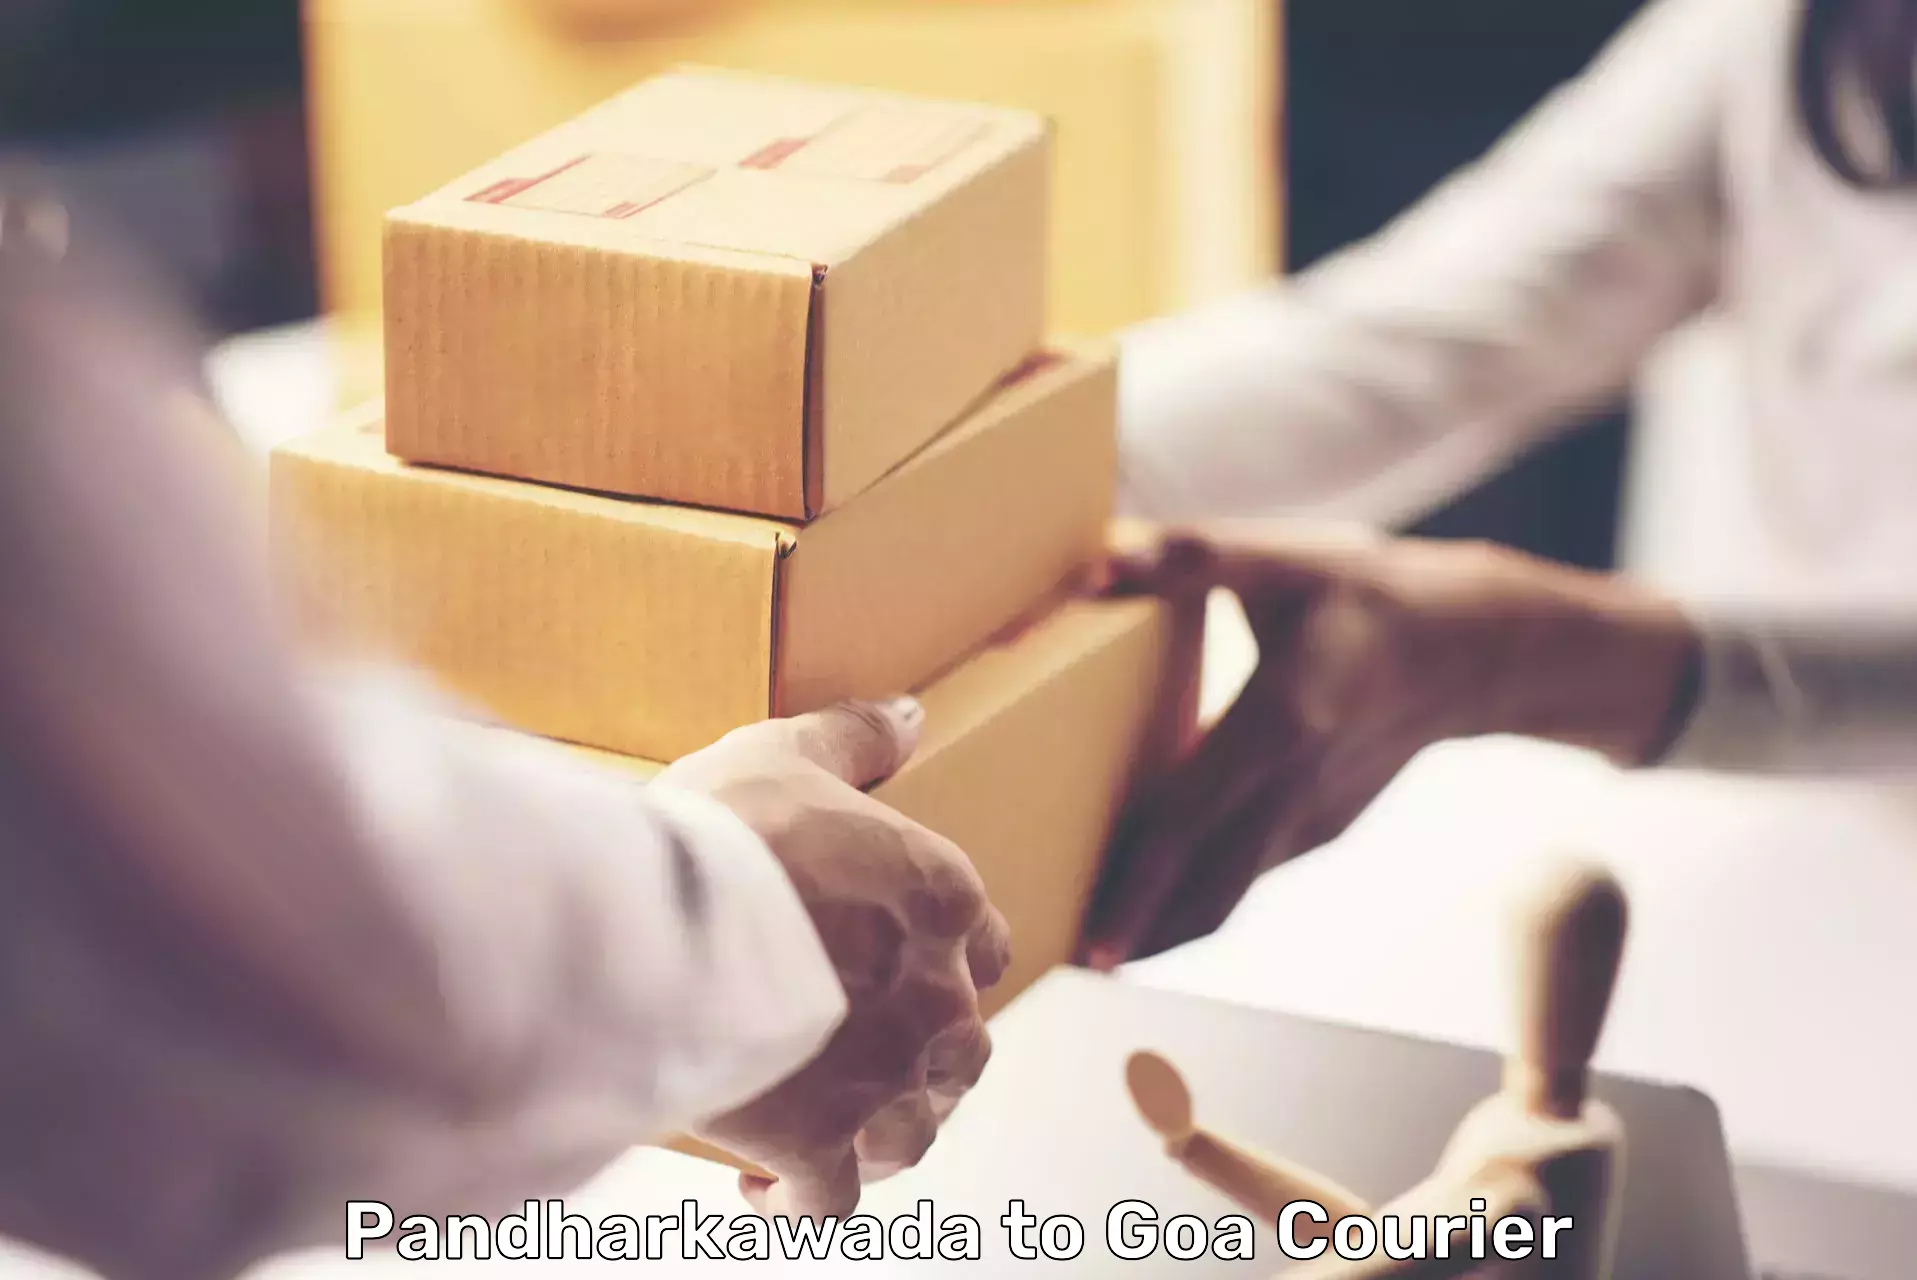 Courier service partnerships Pandharkawada to Sanvordem